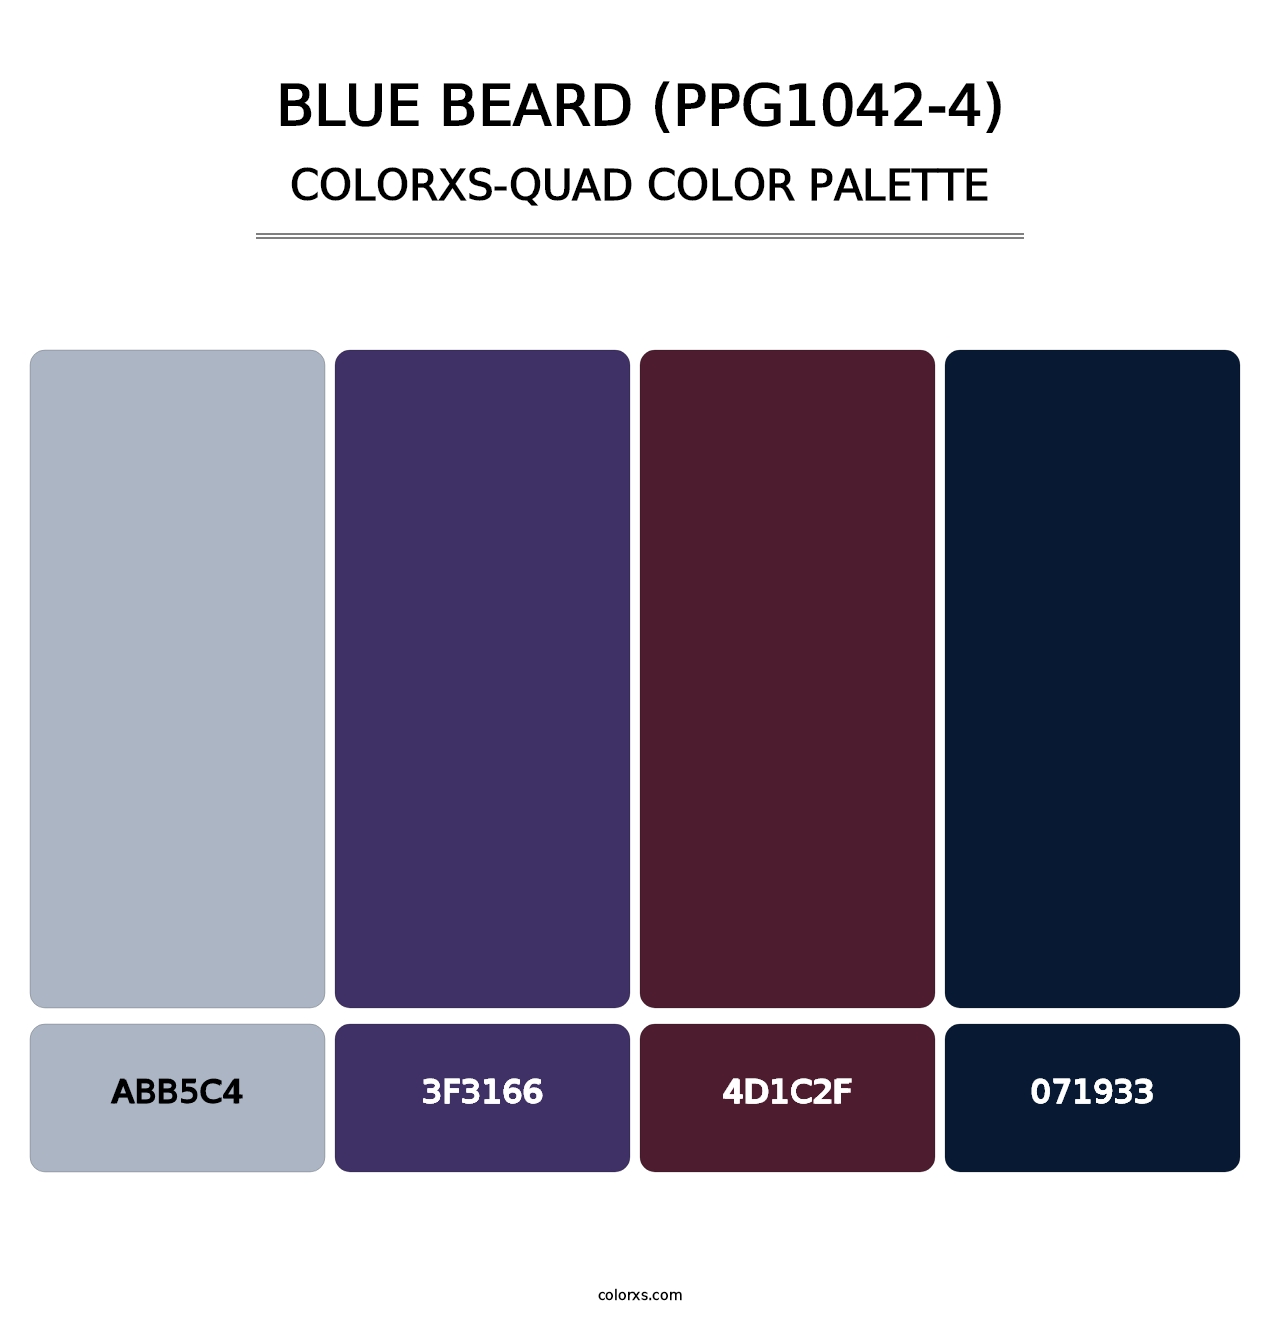 Blue Beard (PPG1042-4) - Colorxs Quad Palette